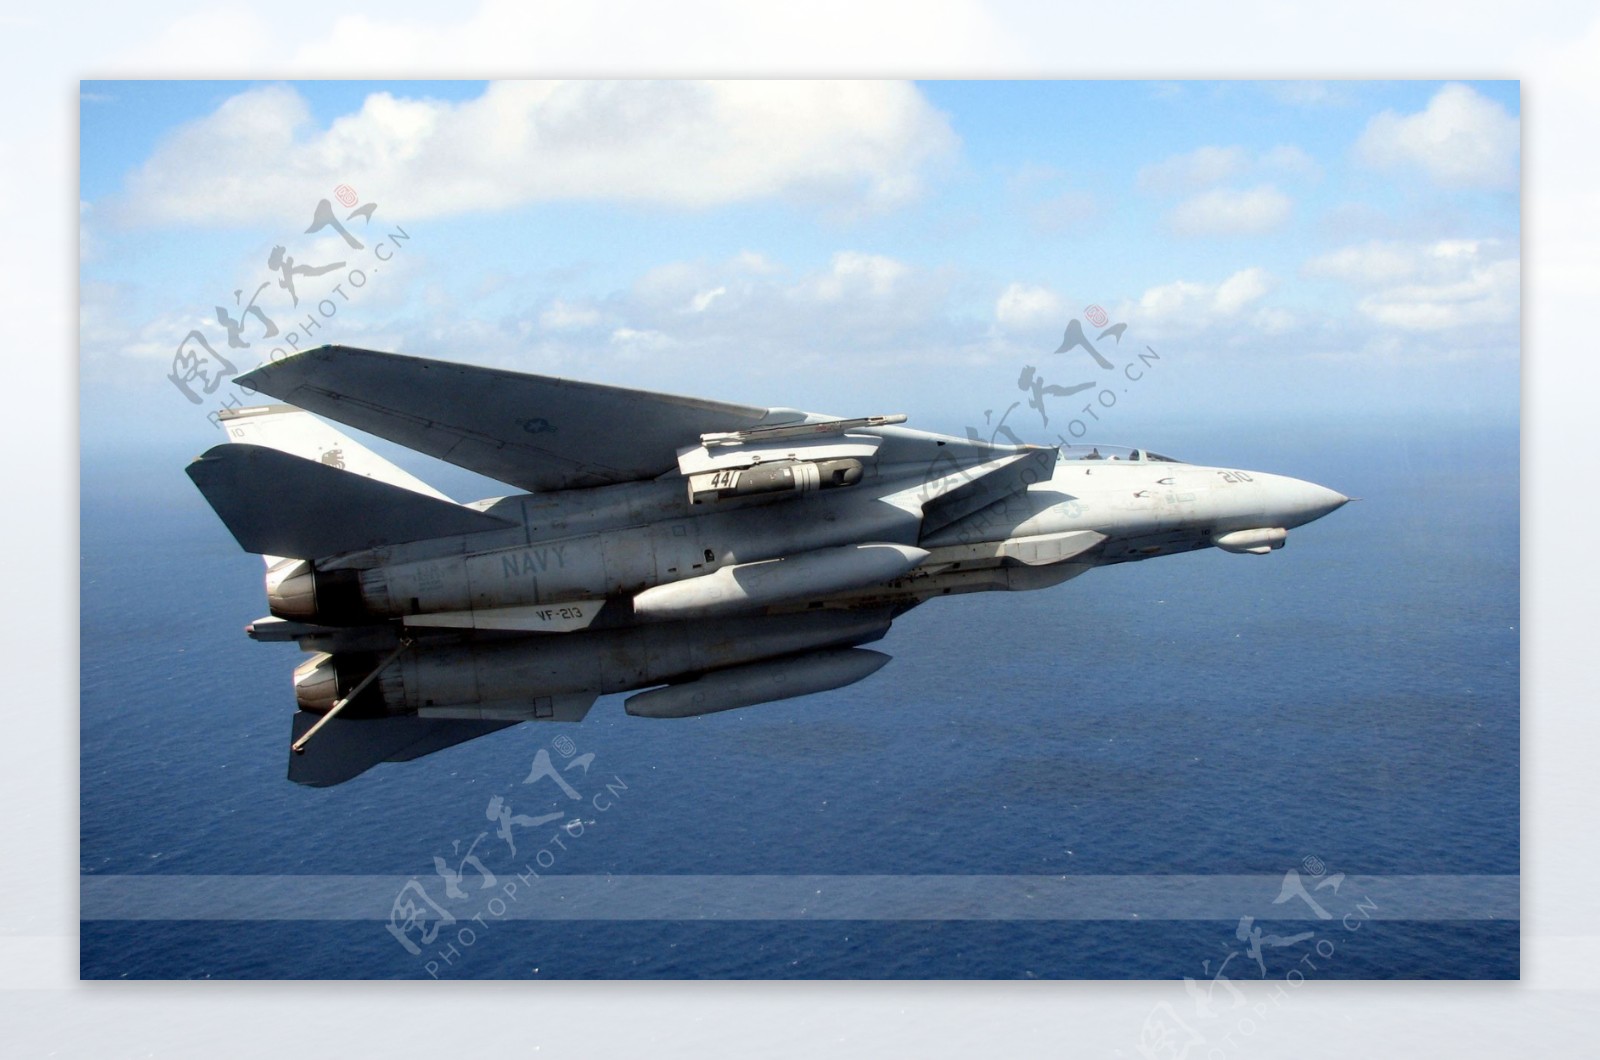 F14战斗机图片